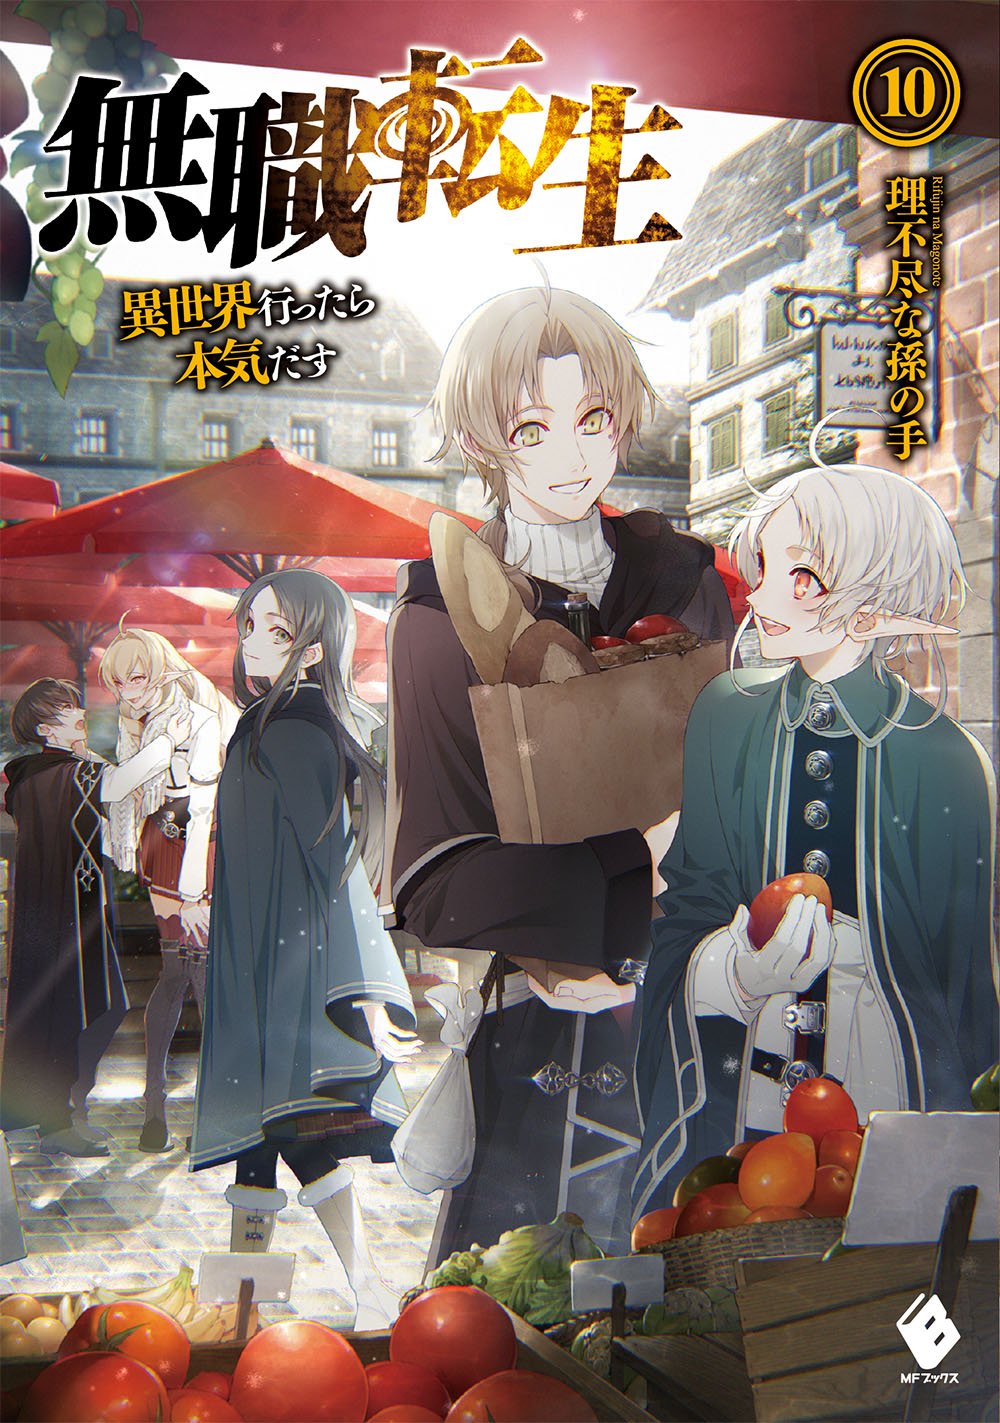 Mushoku Tensei: Jobless Reincarnation Japanese light novel volume 10 front cover